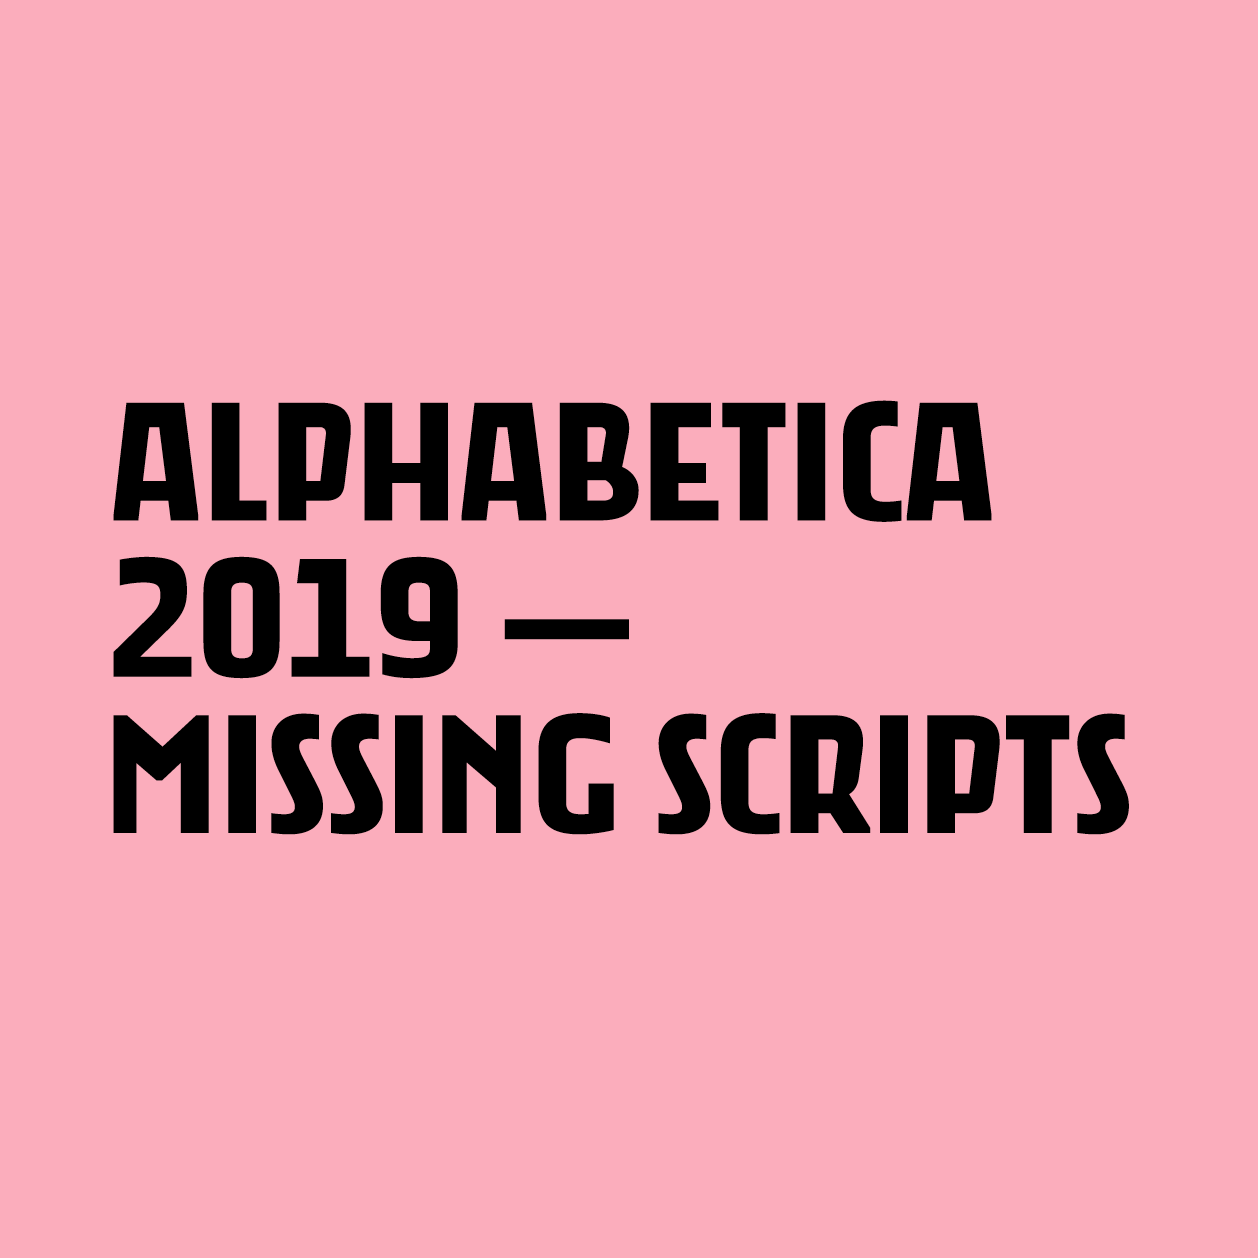 alphabetica-2019-titles